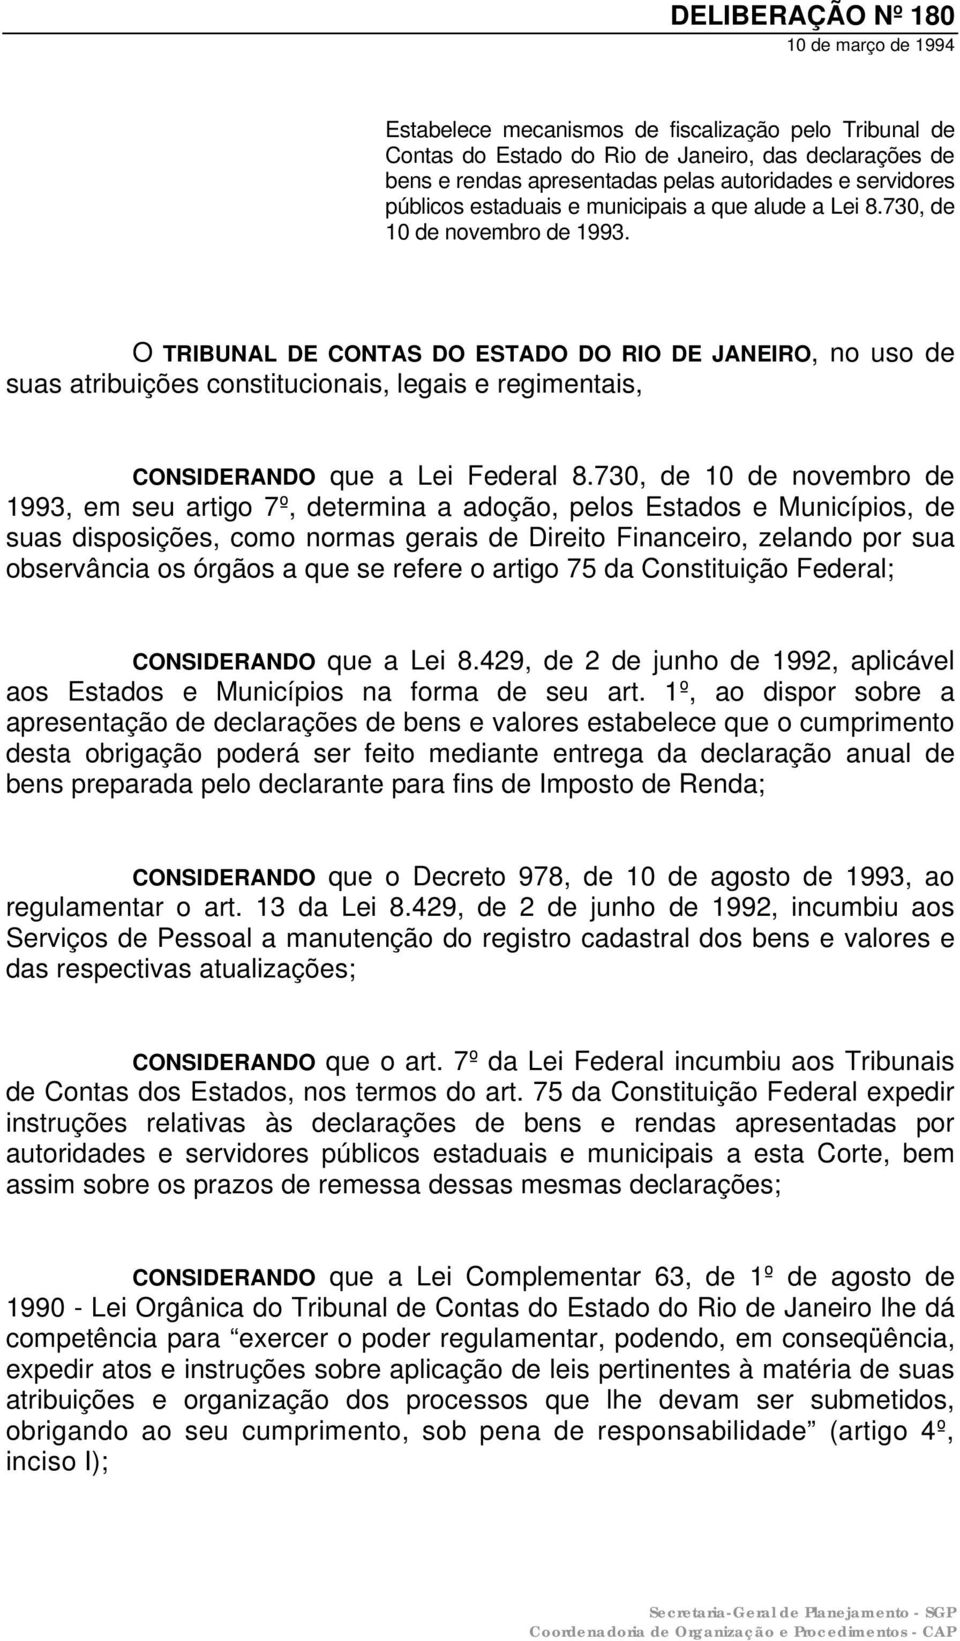 O TRIBUNAL DE CONTAS DO ESTADO DO RIO DE JANEIRO, no uso de suas atribuições constitucionais, legais e regimentais, CONSIDERANDO que a Lei Federal 8.